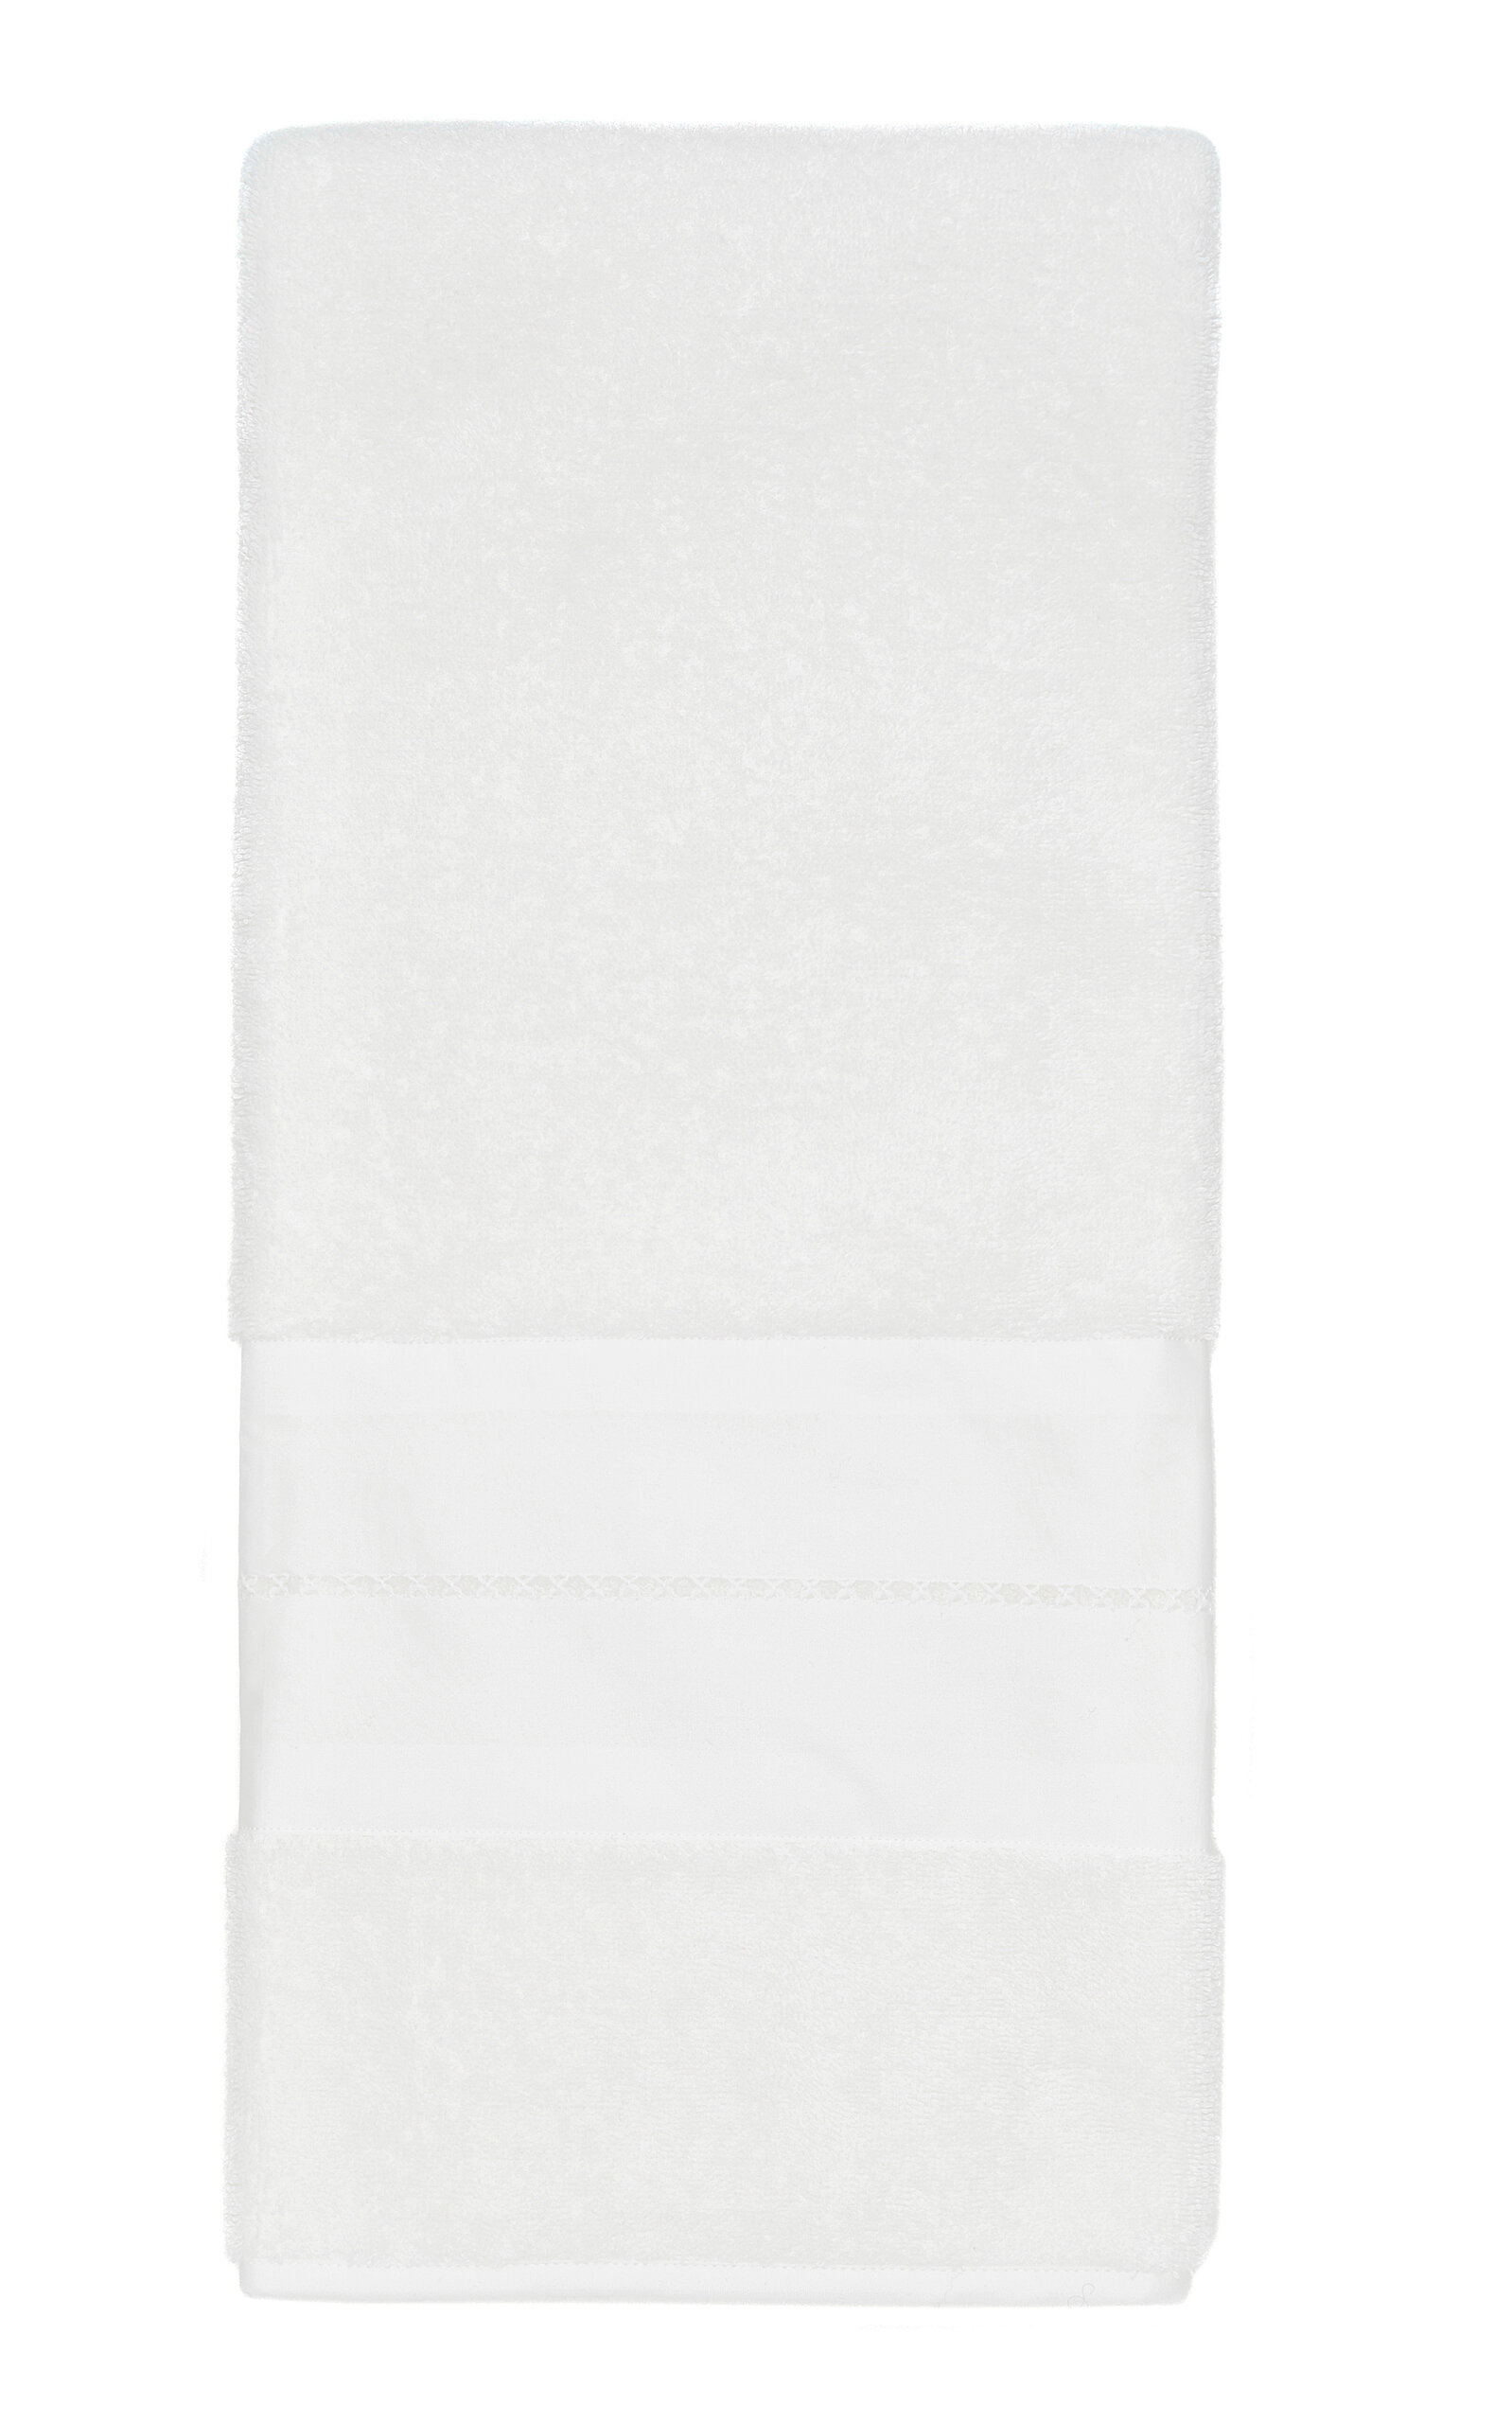 Vis-a-vis Paris Belle De Jour Terry Hand Towel In White